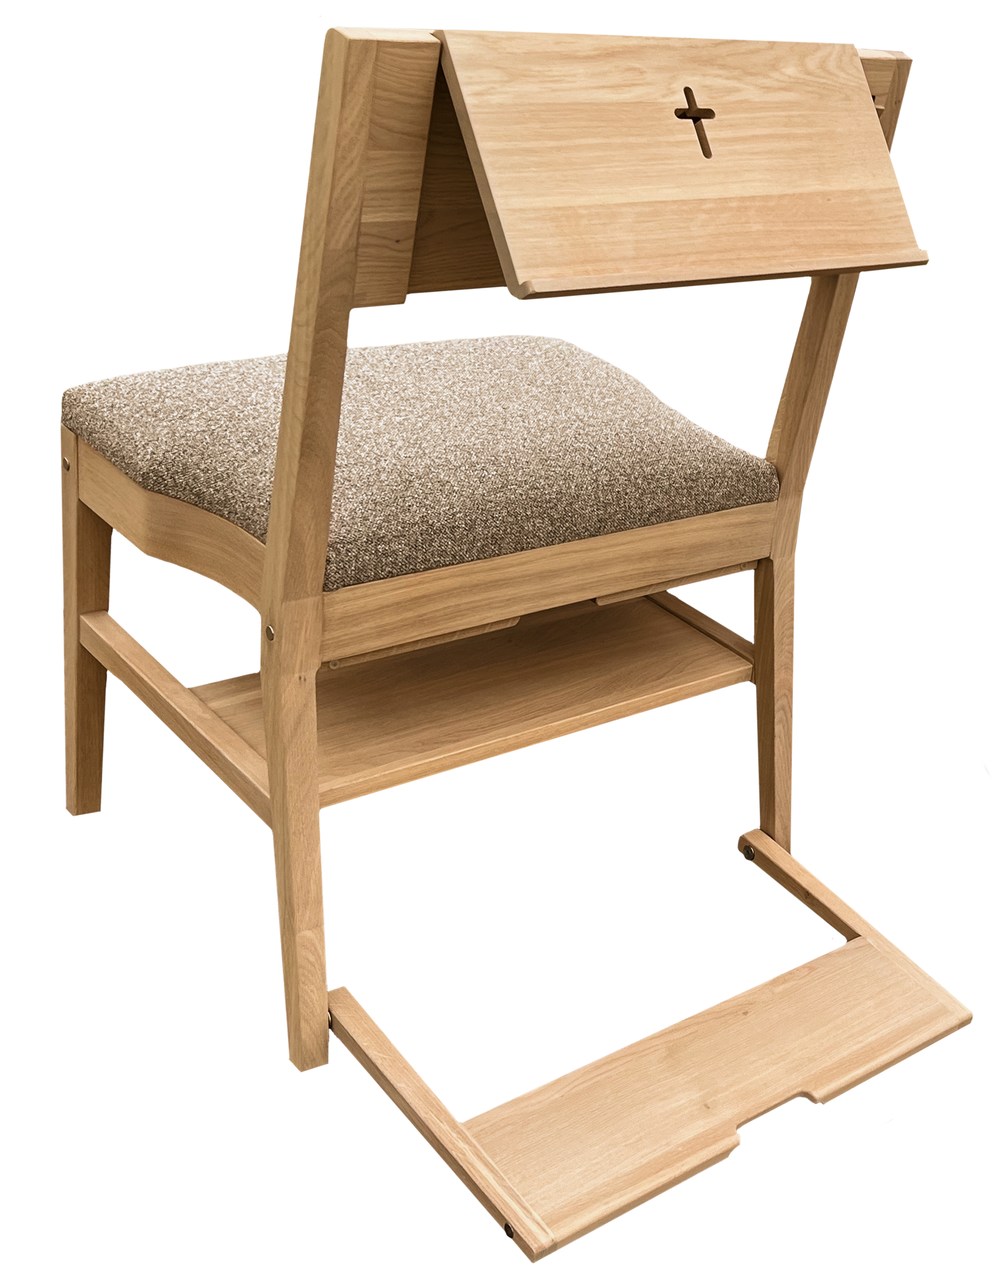 Cadeira de igreja de carvalho ZOE com uma gama completa de acessórios - púlpito, gancho, genuflexório, sistema de conexão, prateleira sob o assento e estofamento do assento